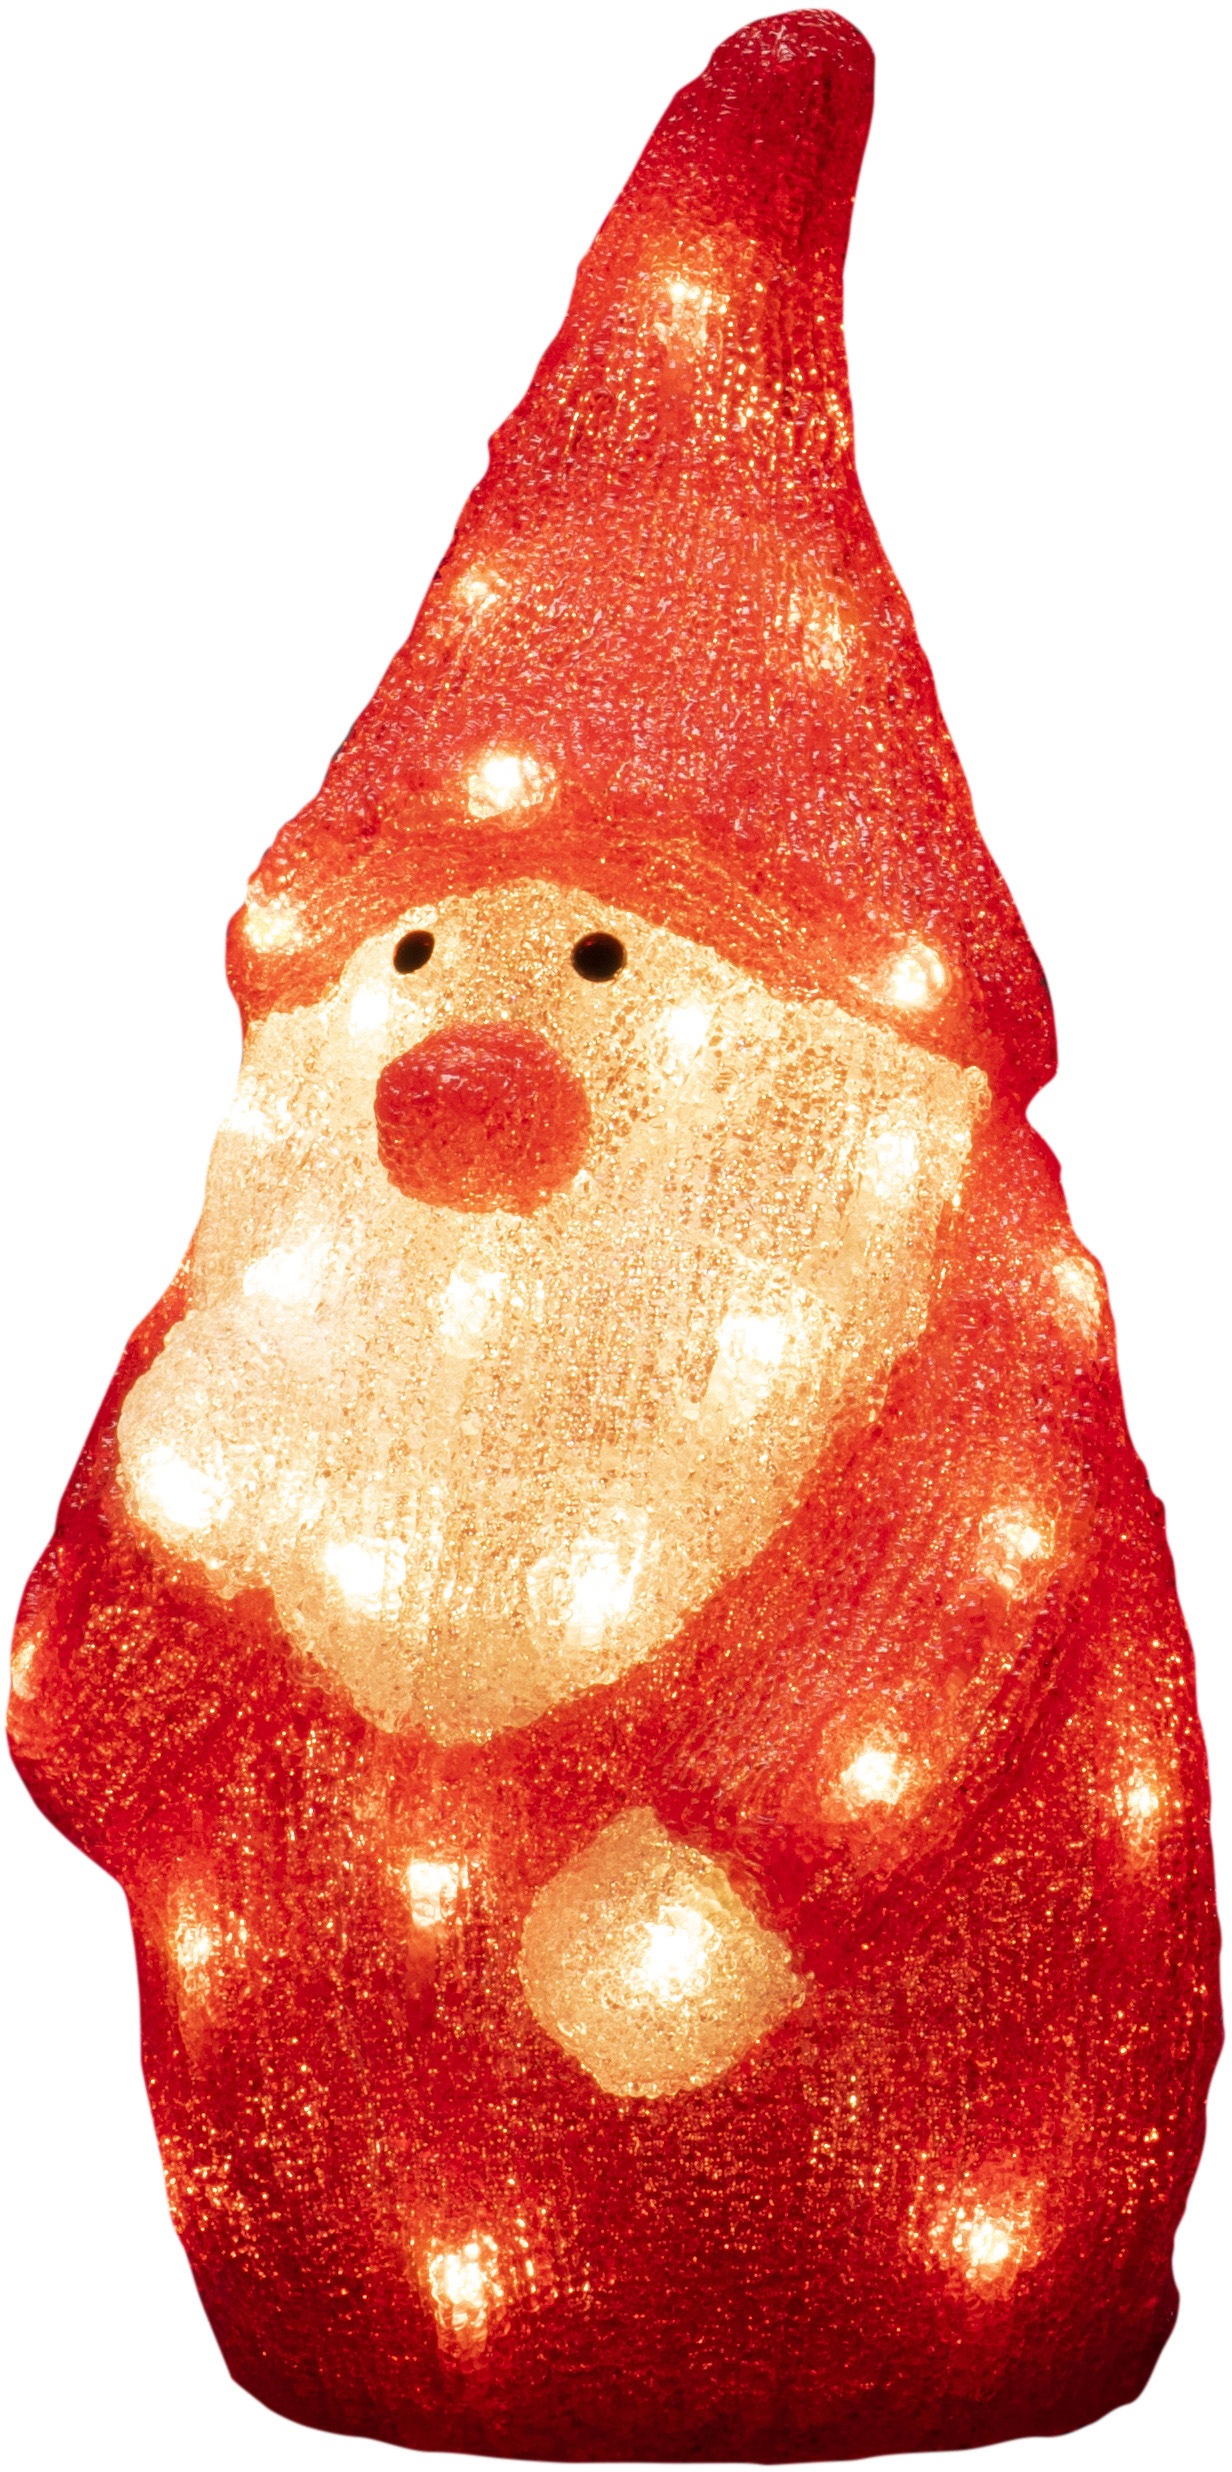 KONSTSMIDE LED Dekofigur "LED Acryl Weihnachtsmann", 40 warm weiße Dioden